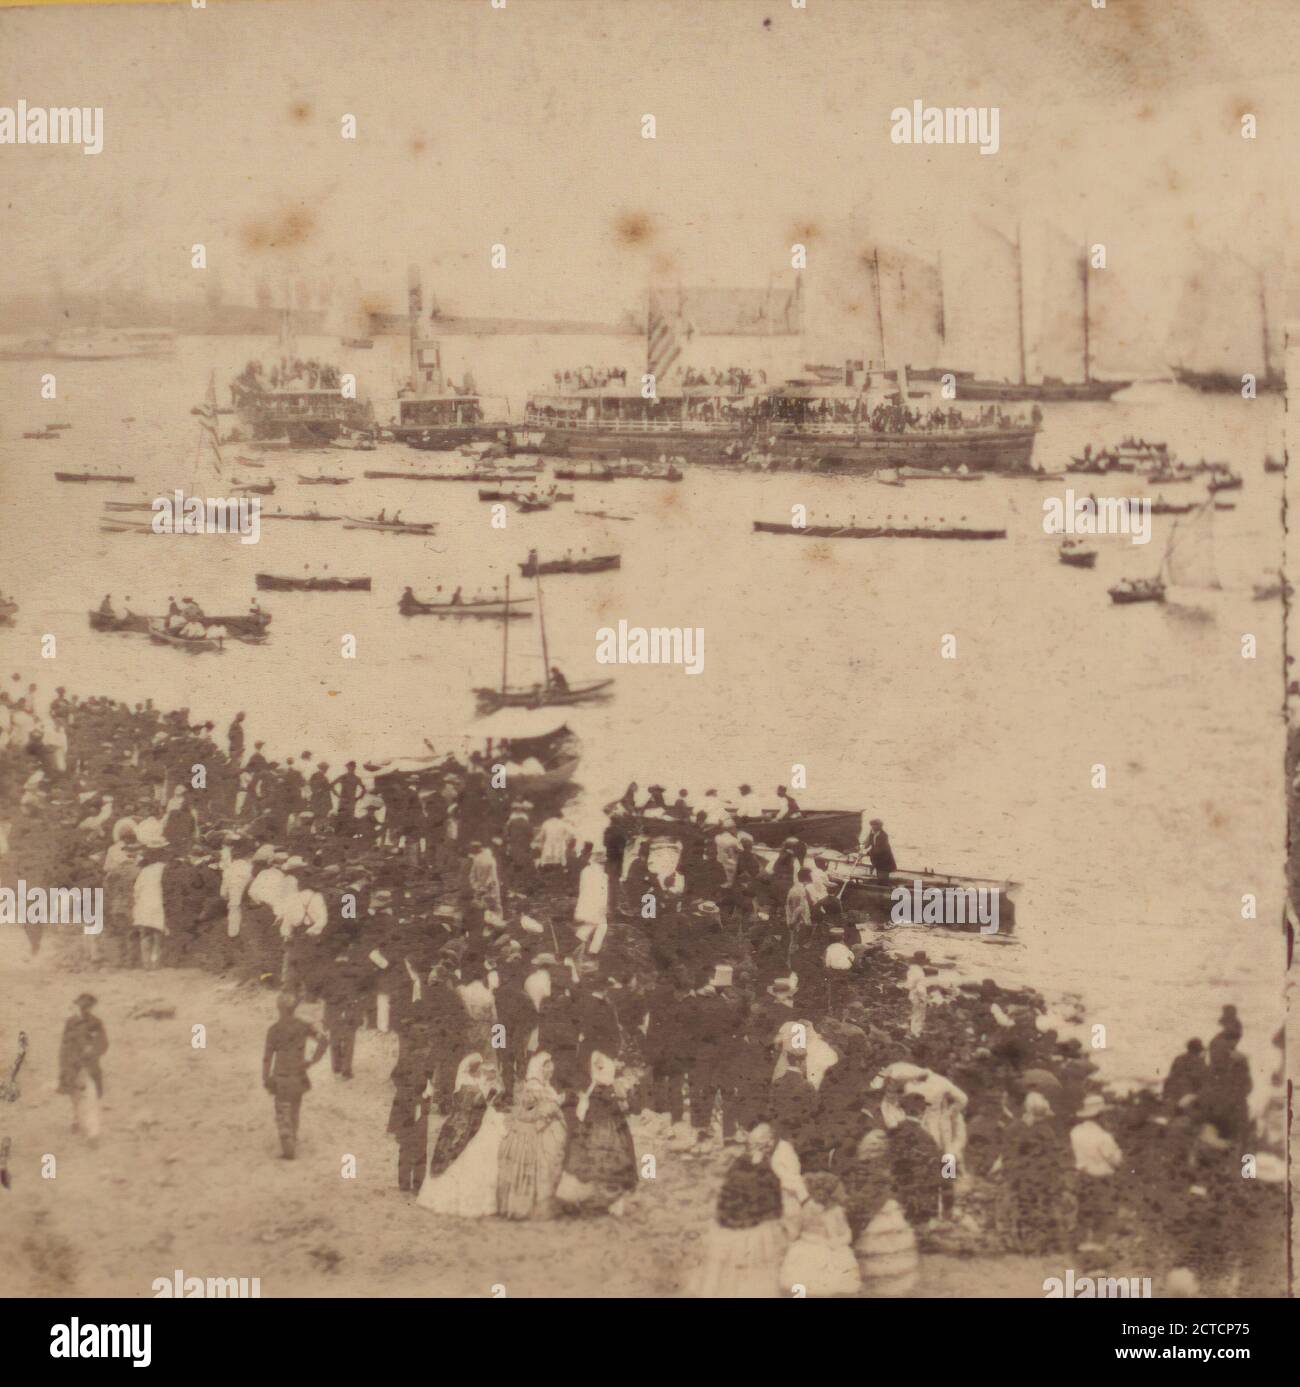 Scène animée. Le rivage regorge de spectateurs et l'eau est bondée de bateaux et de voiliers, le 4 juillet 1860., 1860, New York (État), New York (N.Y.), New York Harbour (N.Y. et N.J.), New York Banque D'Images